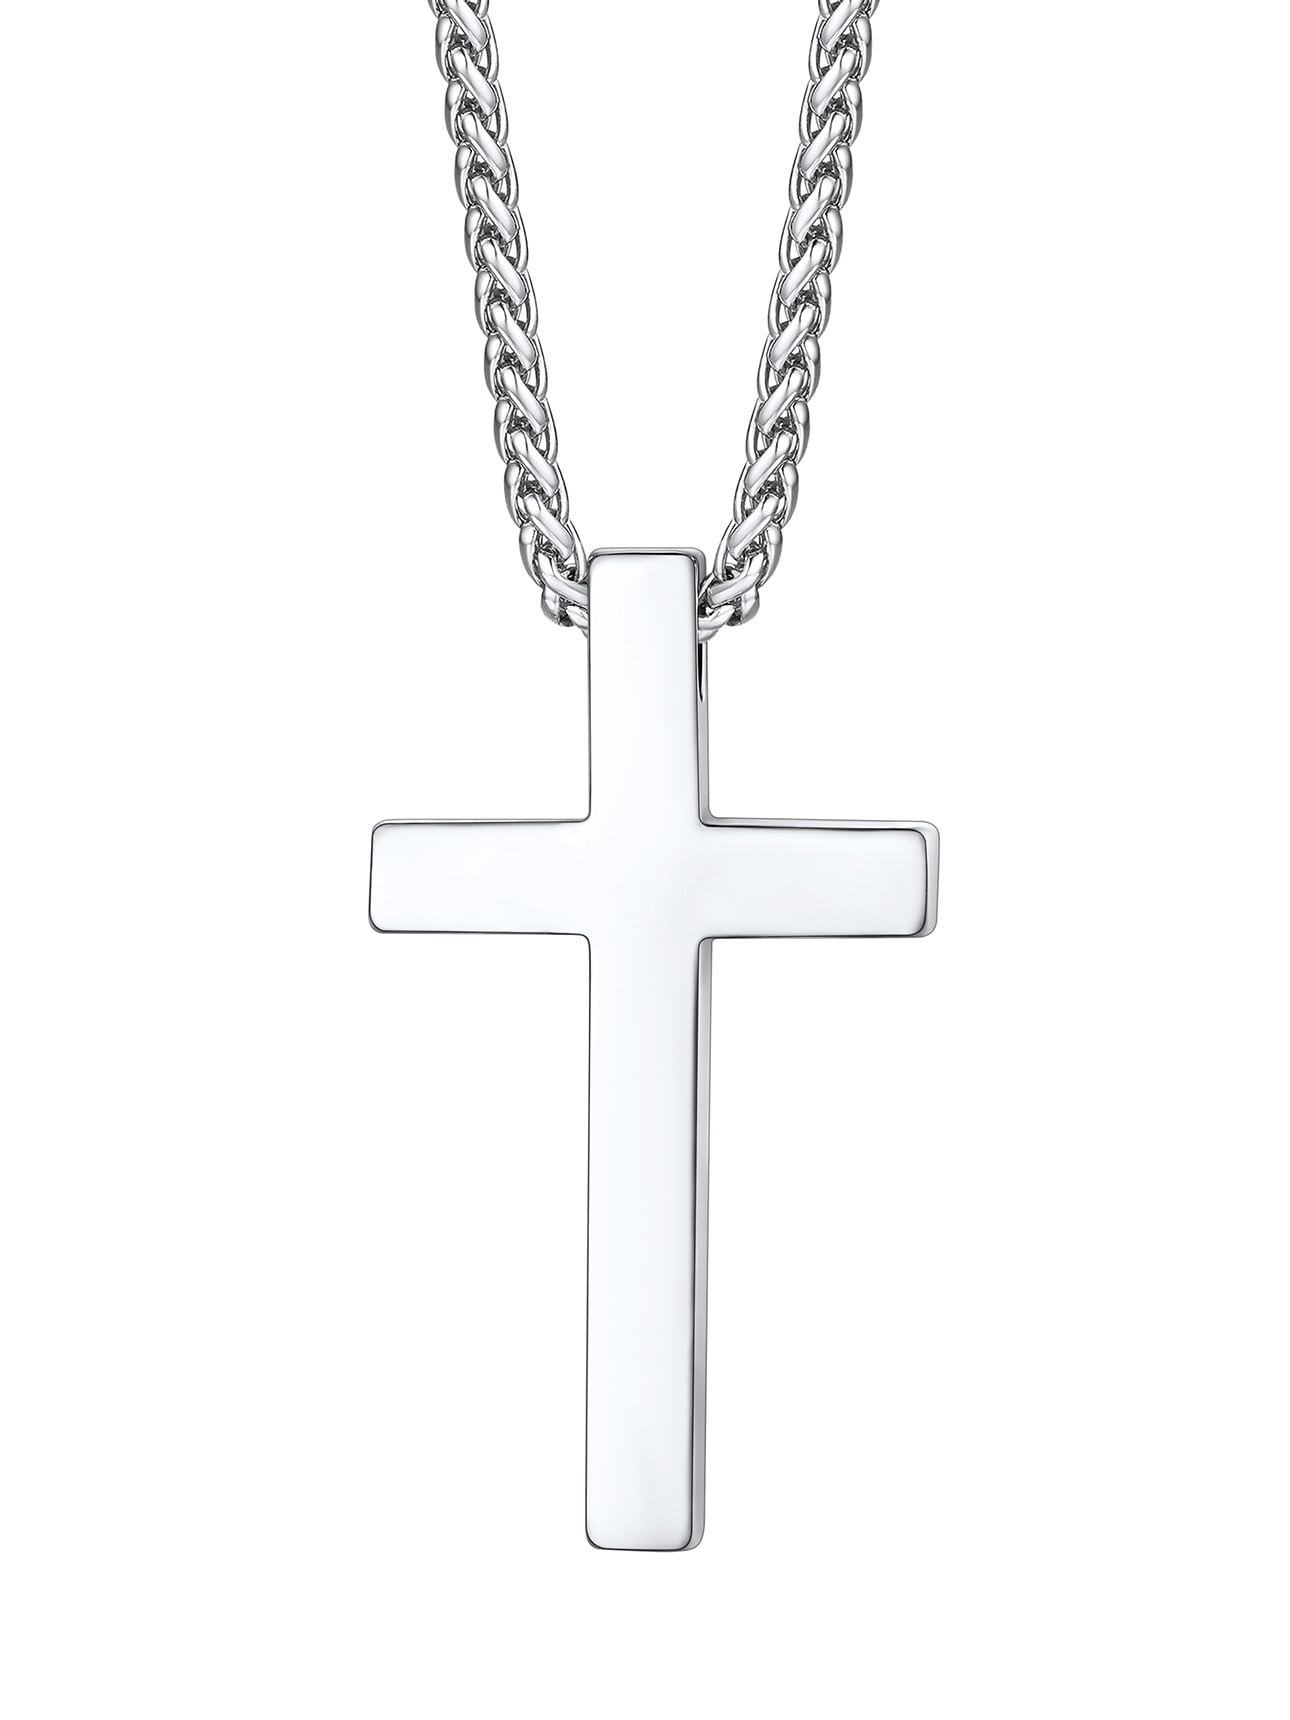 Bestyle Cross Necklace Chain for Men Women Stainless Steel Jesus Cross ...